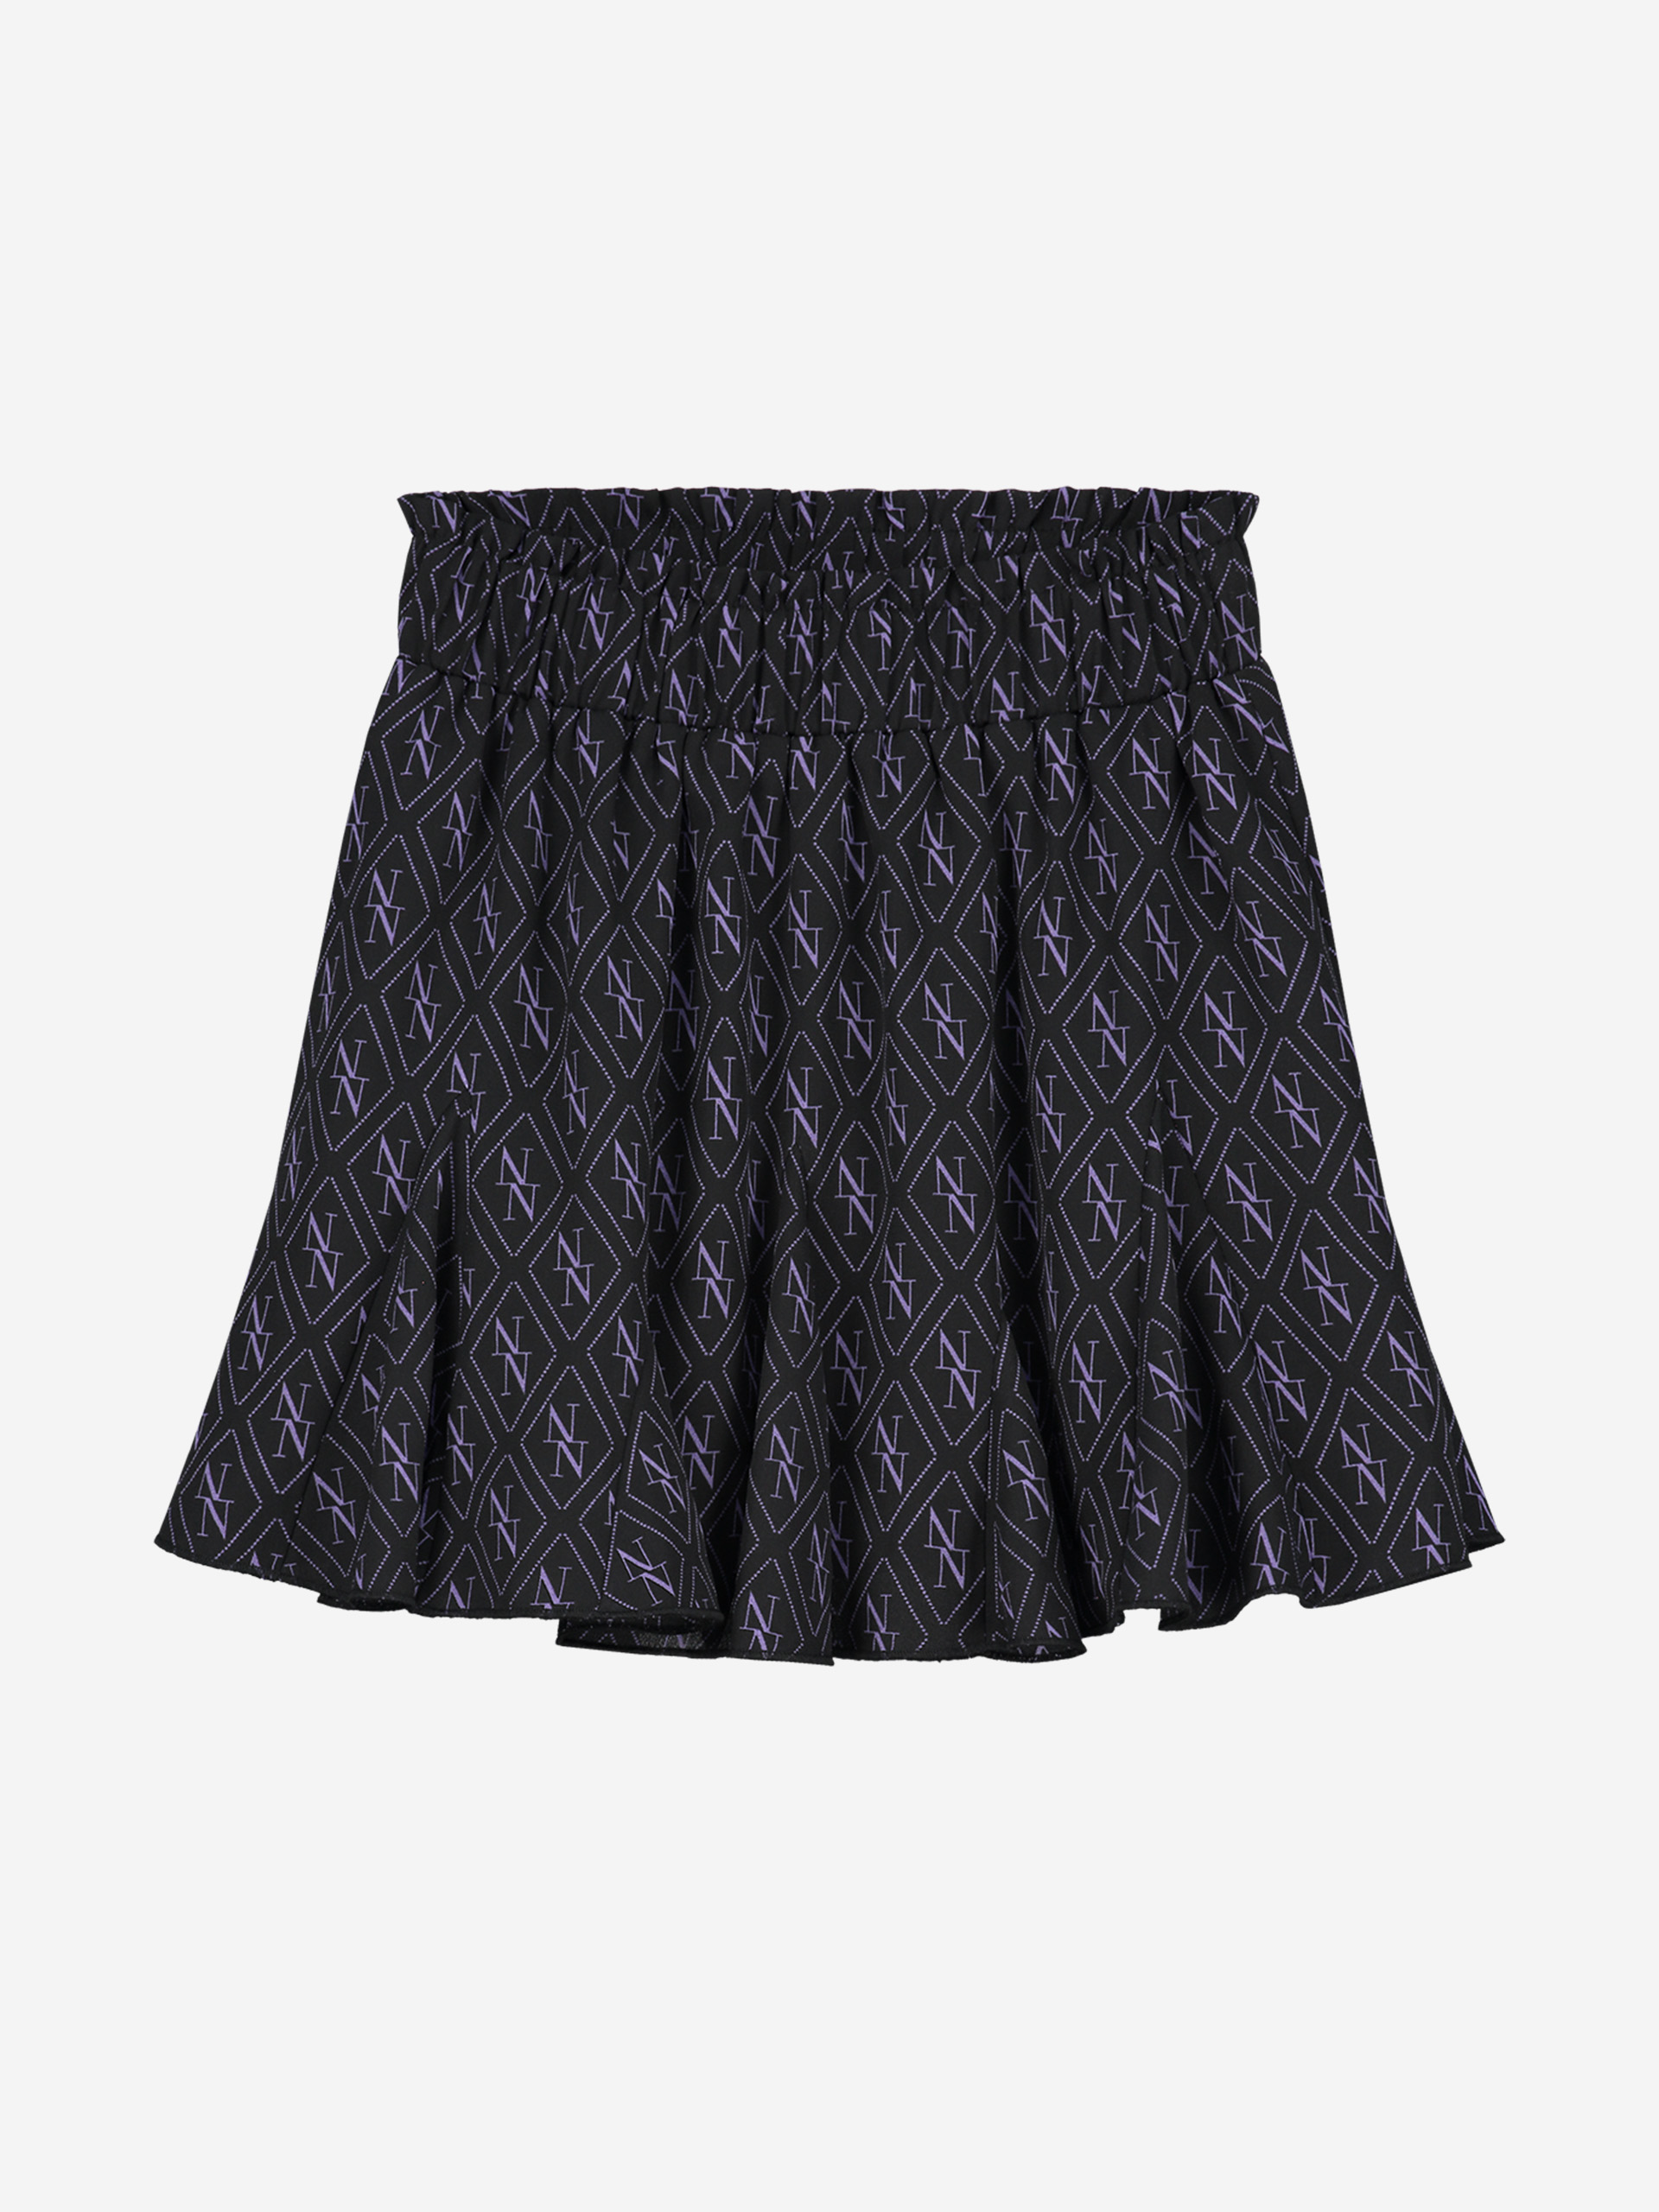 Winona Skirt